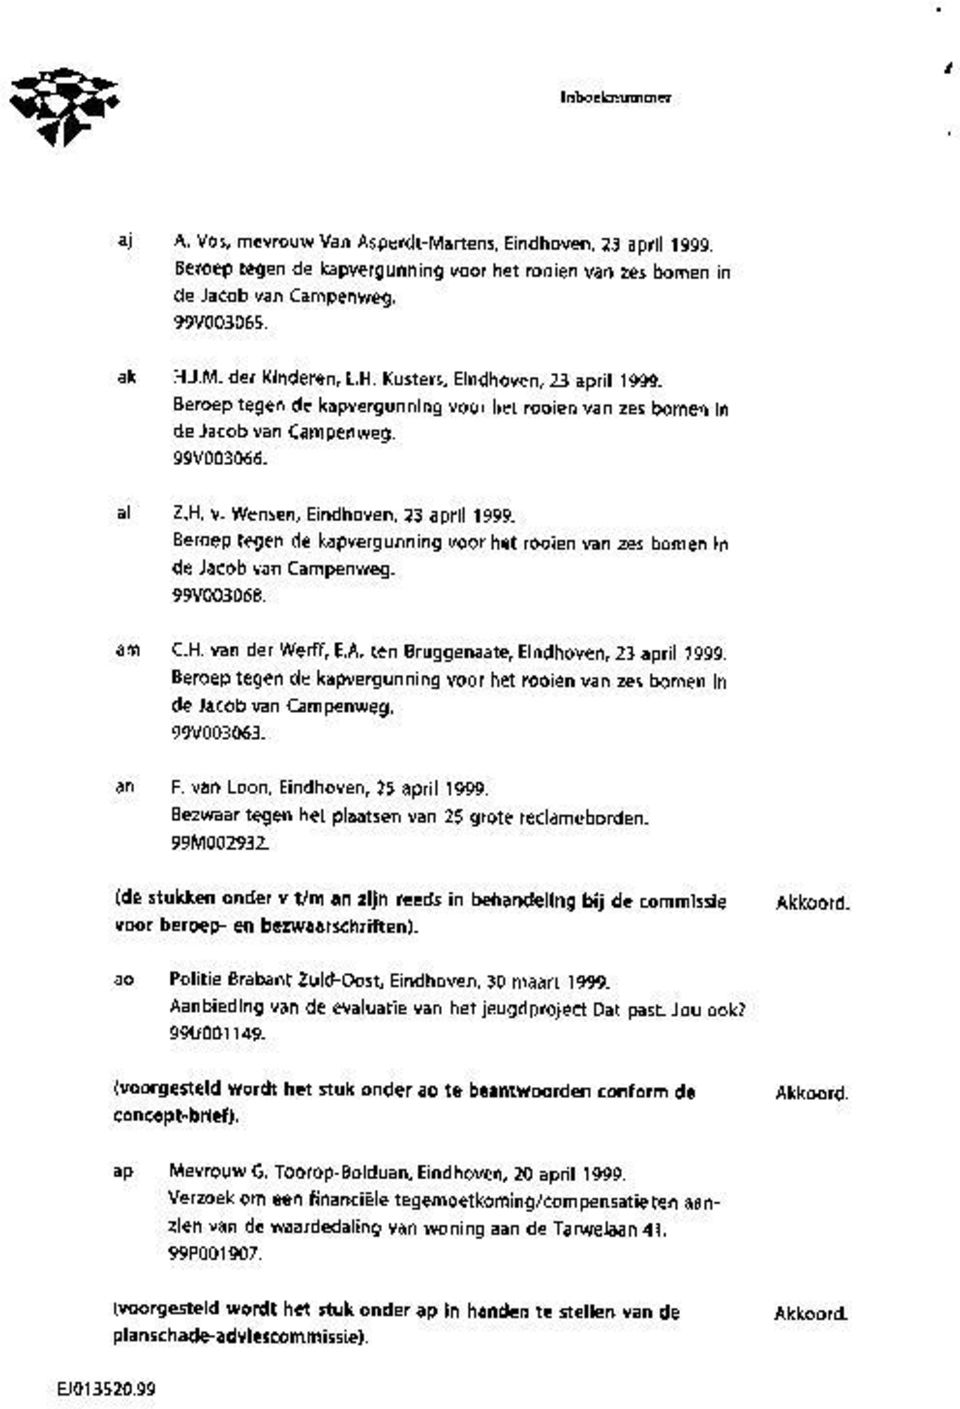 Beroep tegen de kapvergunning voor het rooien van zes bomen in de Jacob van Campenweg. 99V003068. am C.H. van der Werff, E.A. ten Bruggenaate, Eindhoven, 23 april 1999.